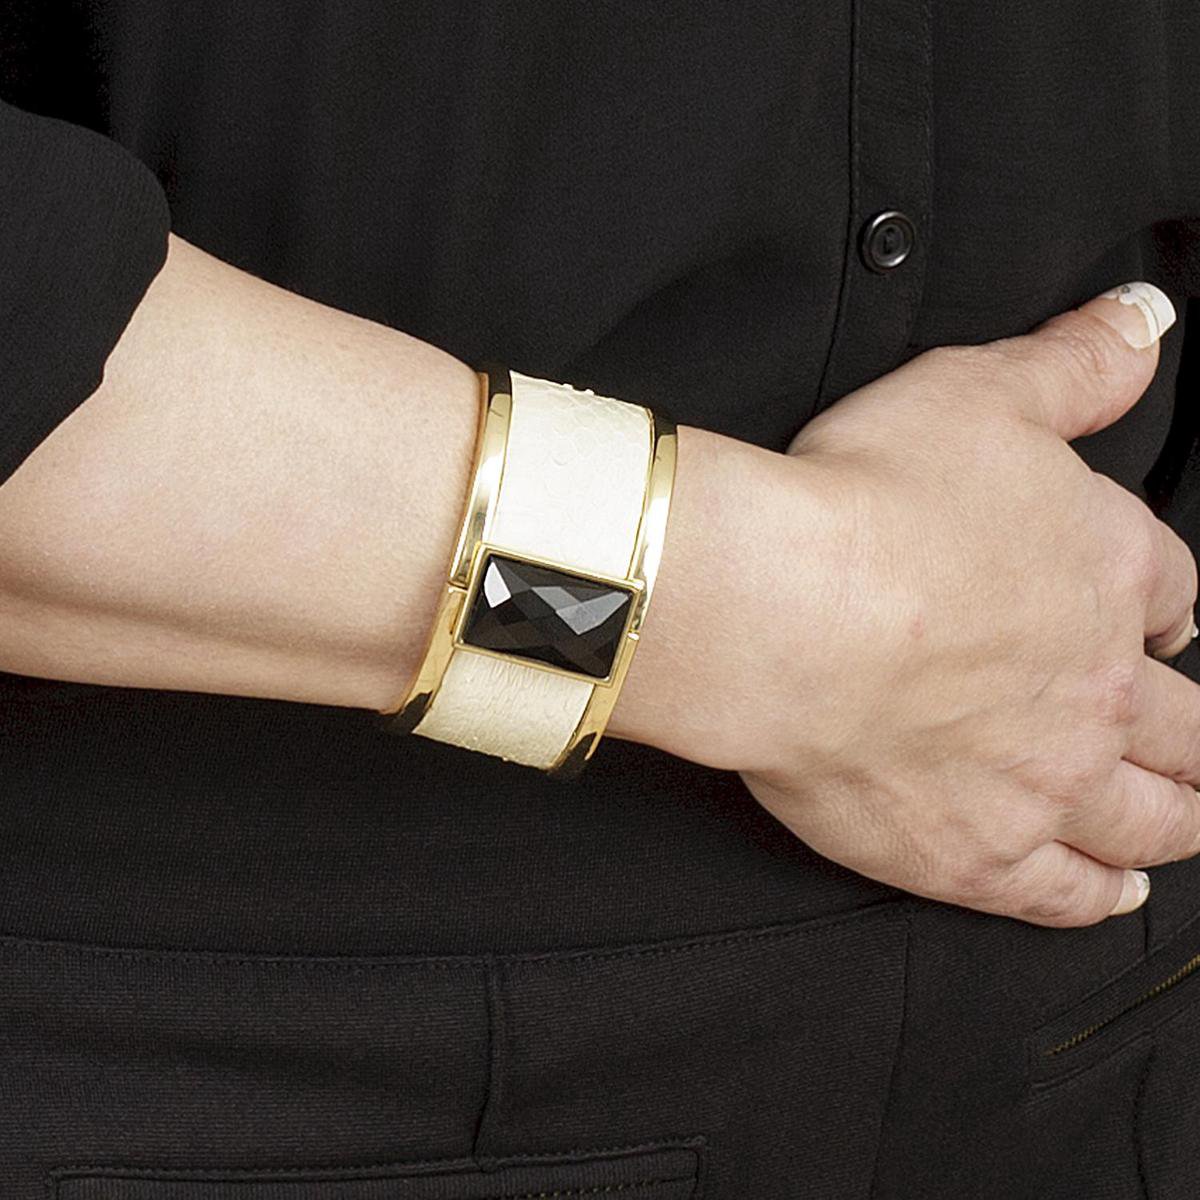 NEW SALE van 74,00 EUR afgeprijsd, BELUCIA dames bangle - armband KK-01 kalfsleer mat ivoorkleur, goudkleurig, maat 16,8 cm